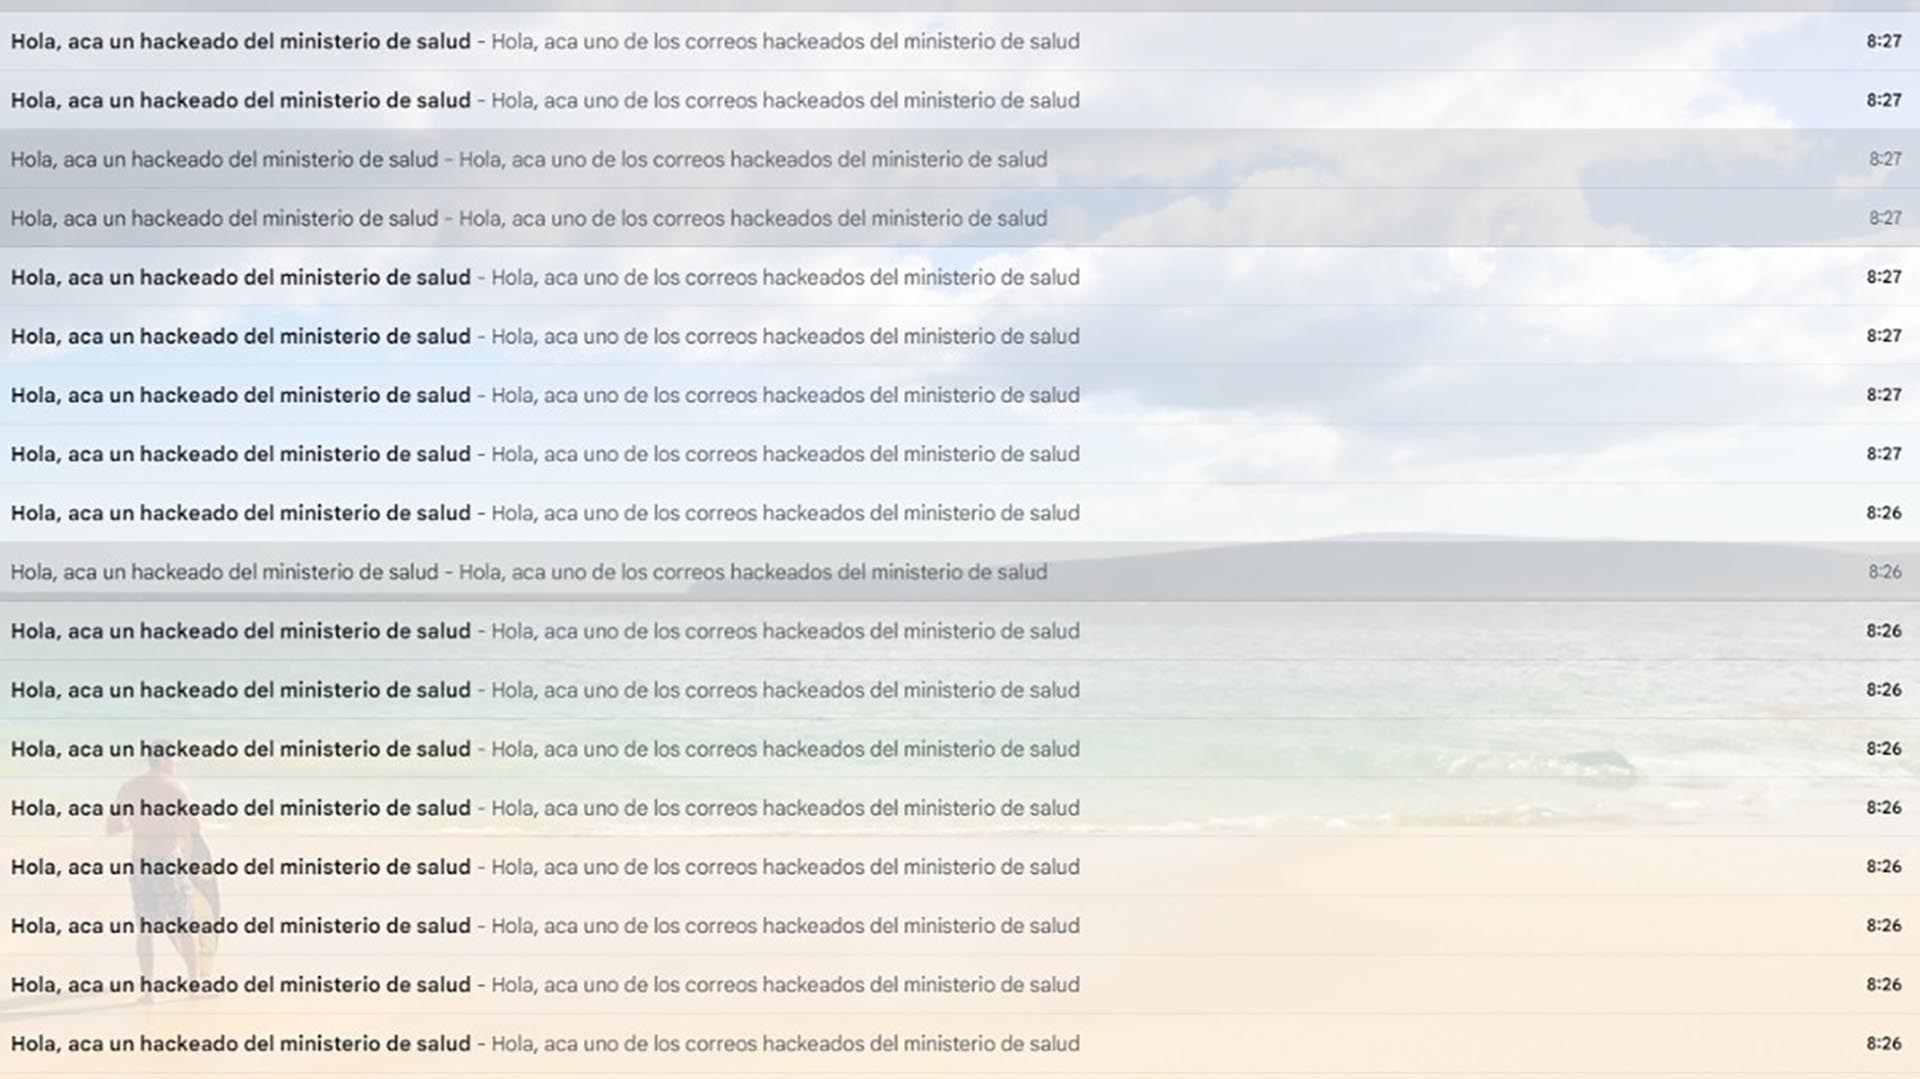 Así aparecían los mails con las denuncias de hackeo / Crédito: captura de pantalla